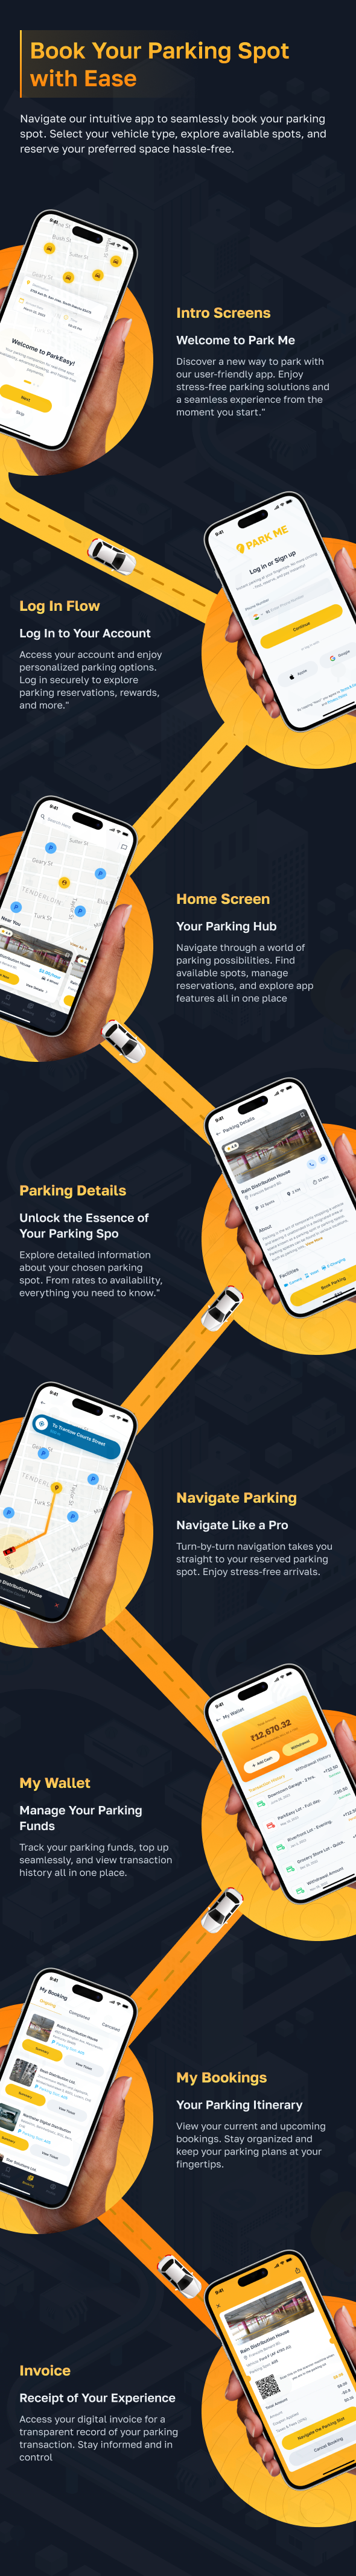 ParkME - Flutter Complete Car Parking App | Parking Spot Booking App - 9